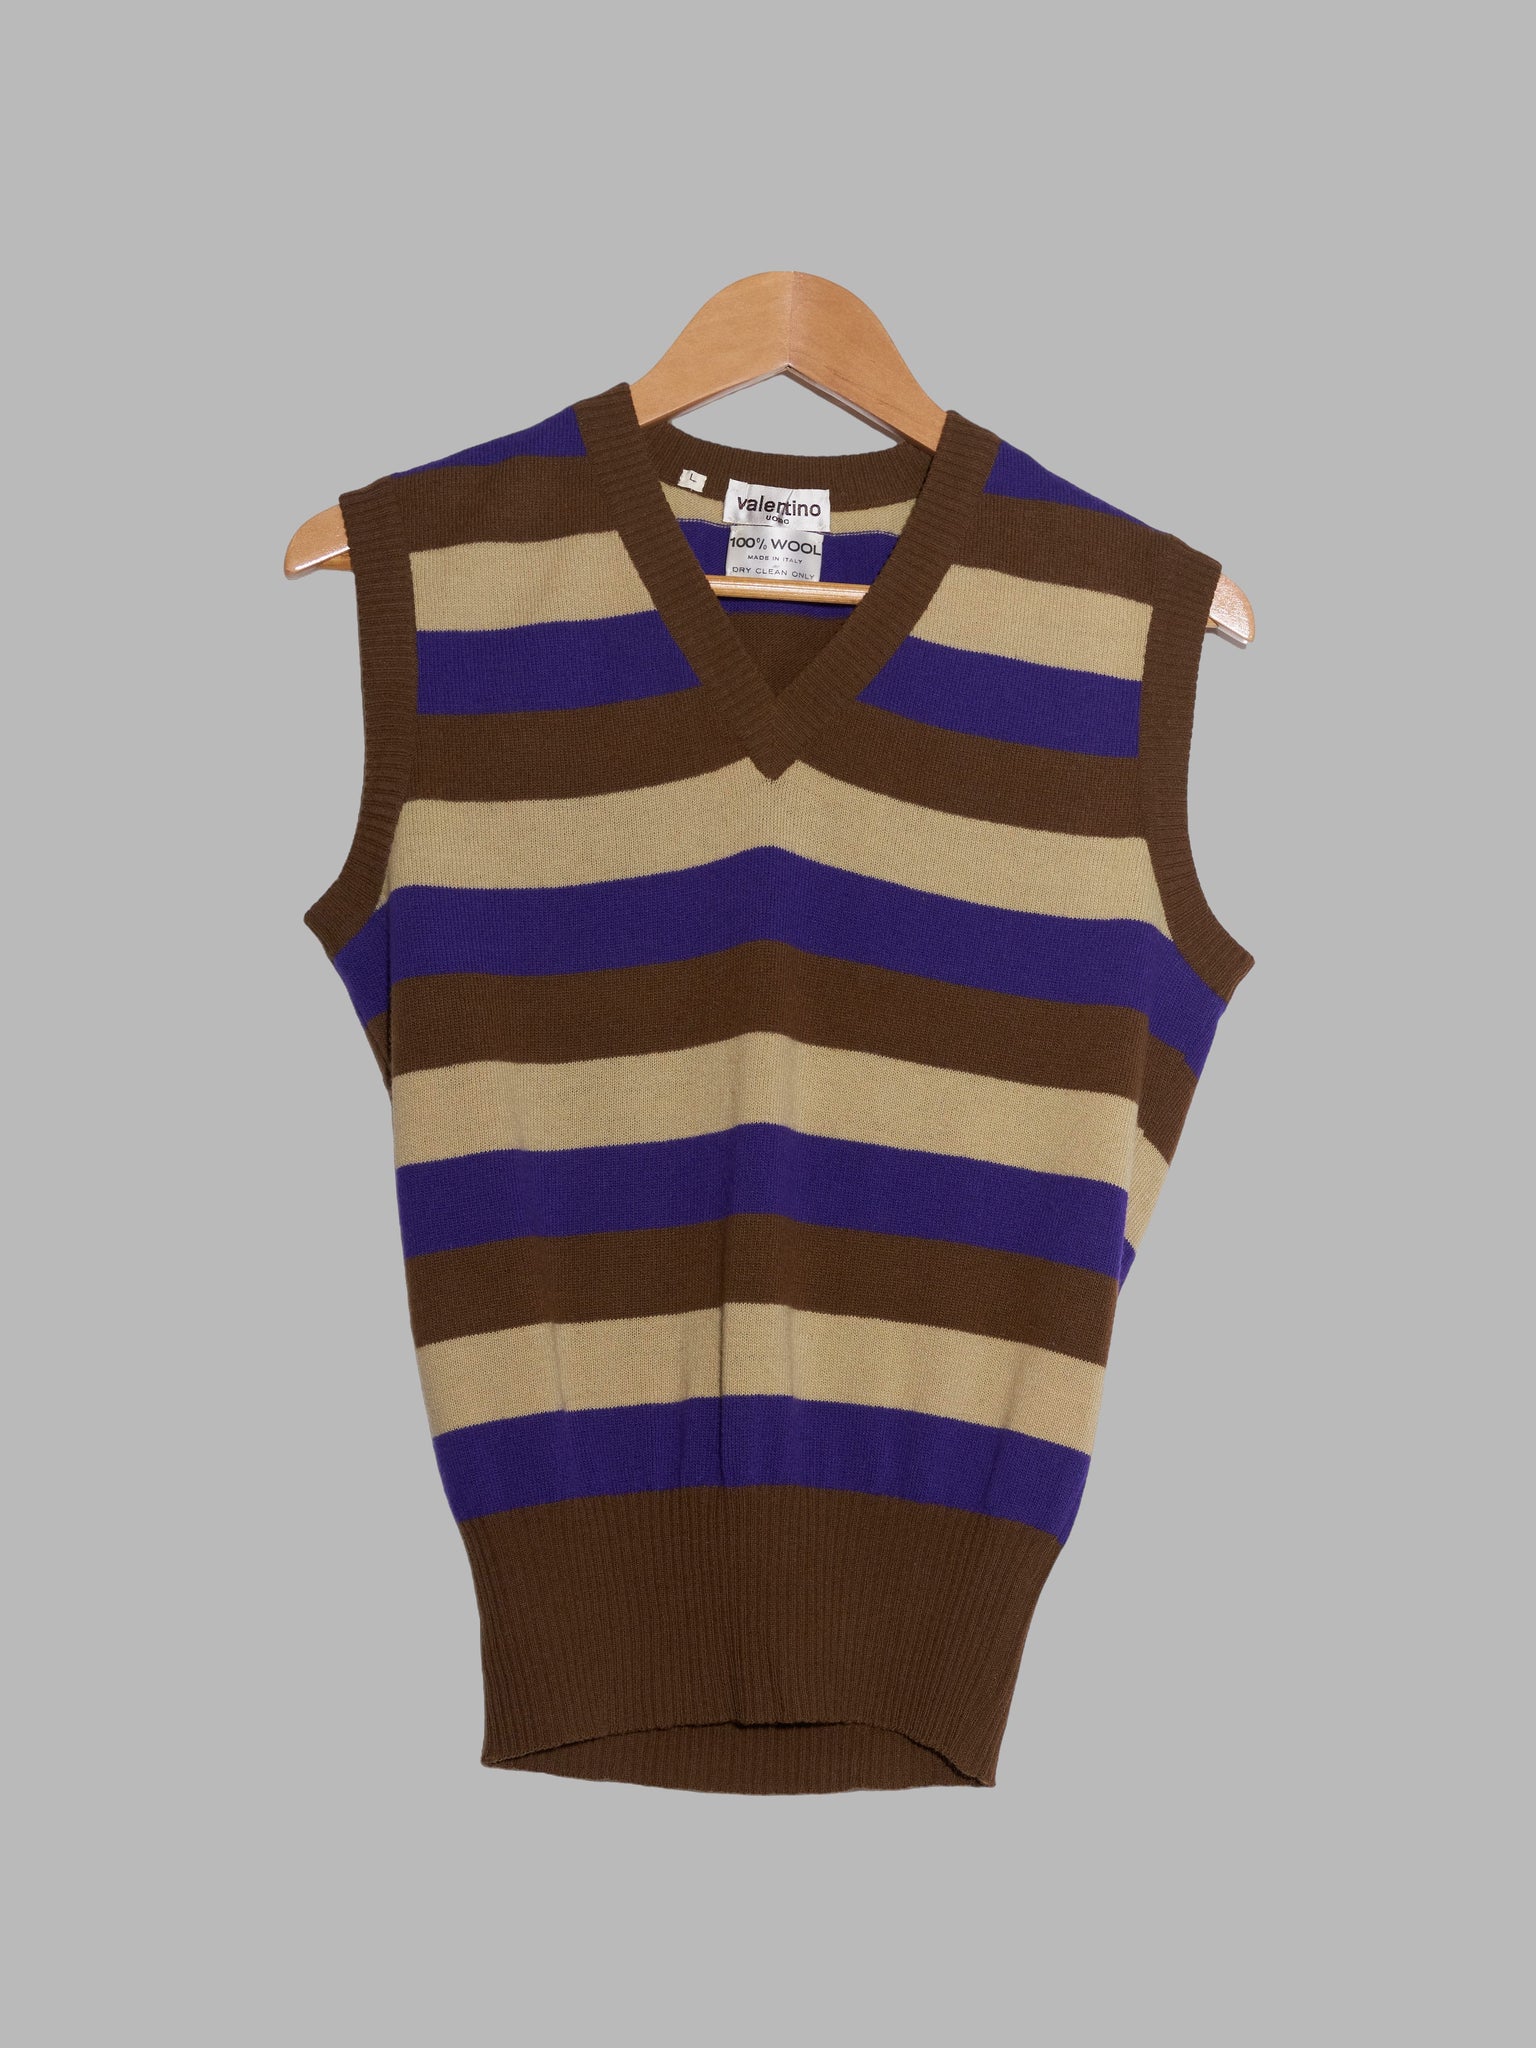 Valentino Uomo 1980s striped brown beige purple wool knitted vest - S M L